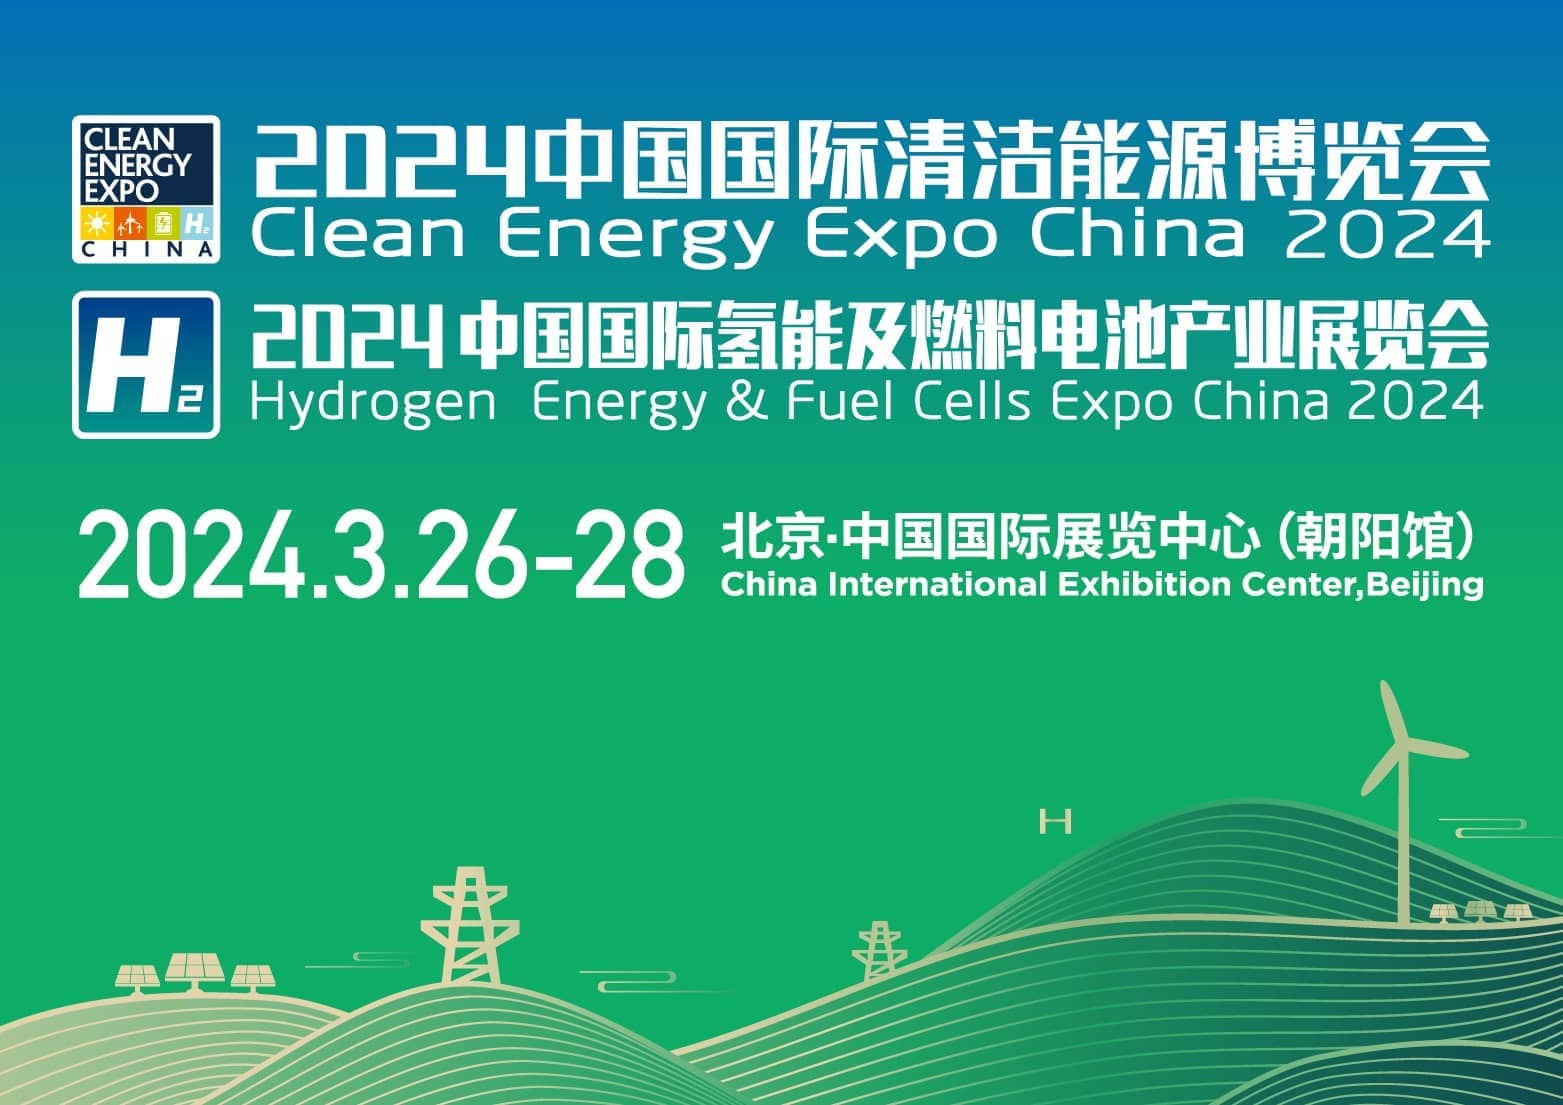 2024中国国际清洁能源博览会 2024中国国际氢能及燃料电池产业展览会观众注册信息验证